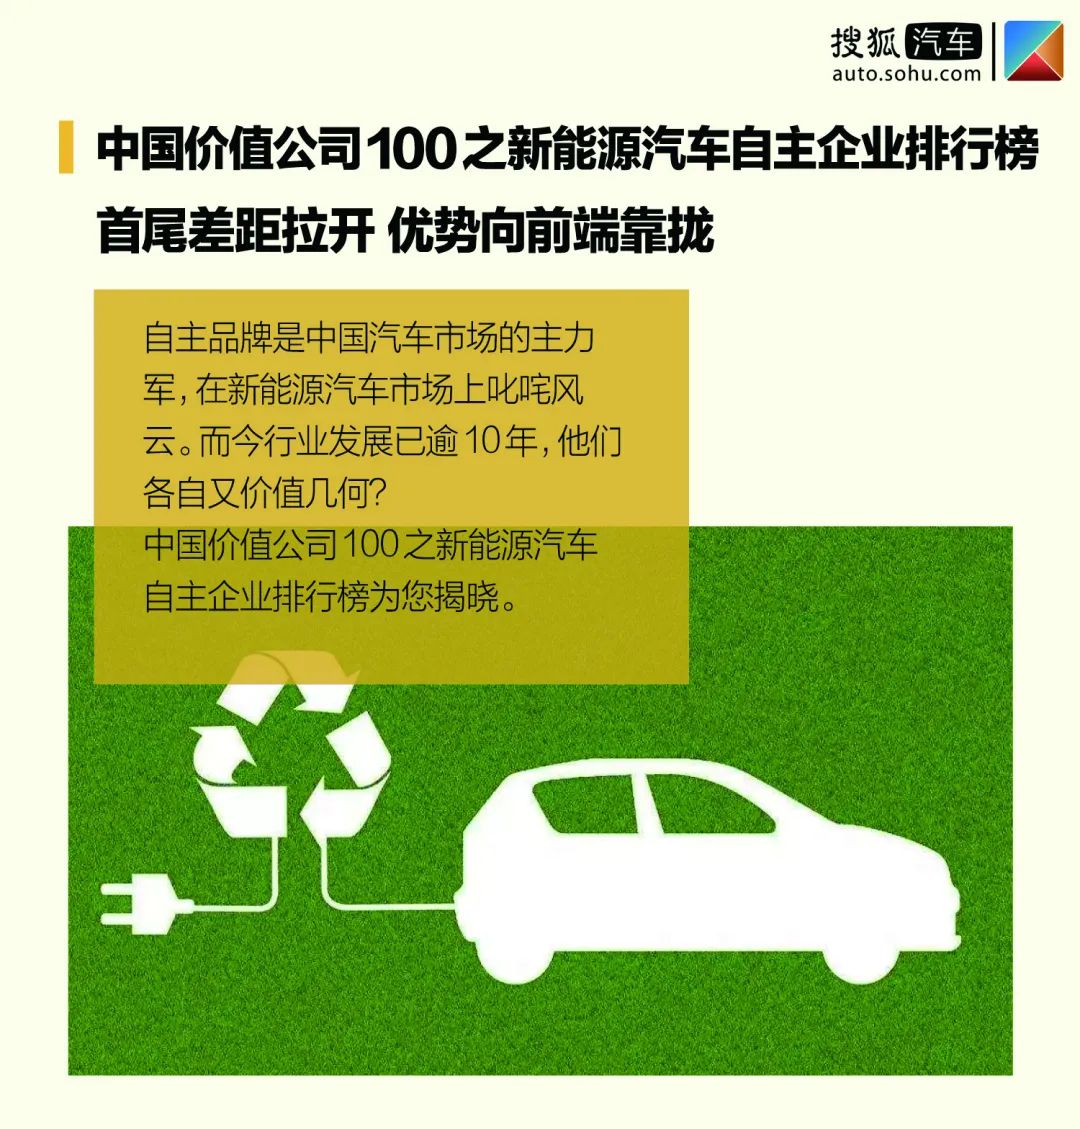 nba赌注平台:中国价值公司100之新能源汽车自主企业排行榜首尾差距拉开 优势向前端靠拢